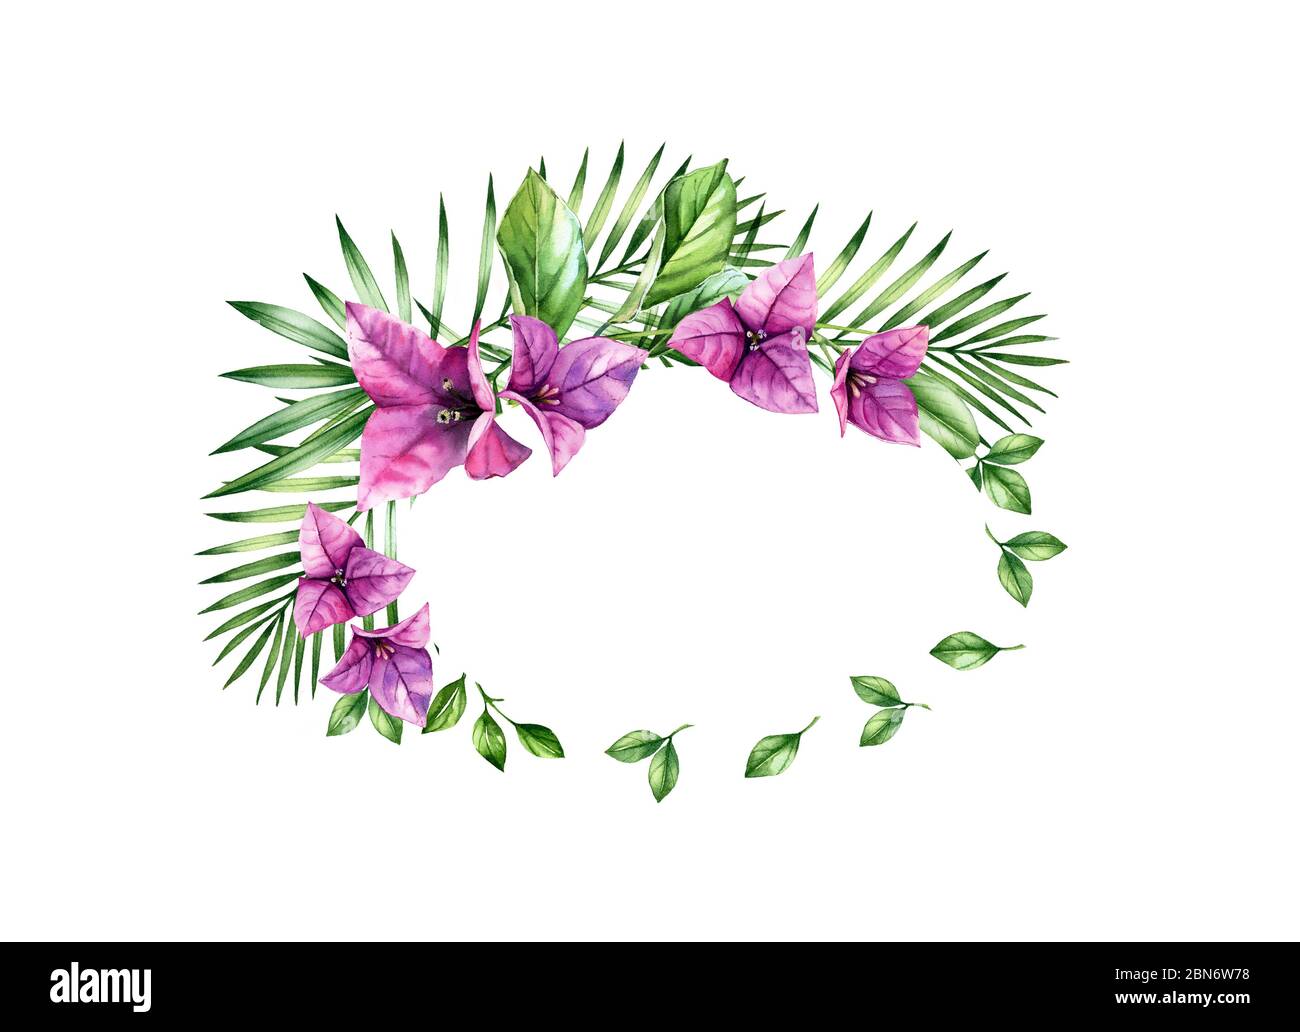 Fond floral aquarelle. Bannière horizontale avec cadre ovale et place pour le texte. Fleurs de bougainvilliers violets. Illustration botanique tropicale Banque D'Images